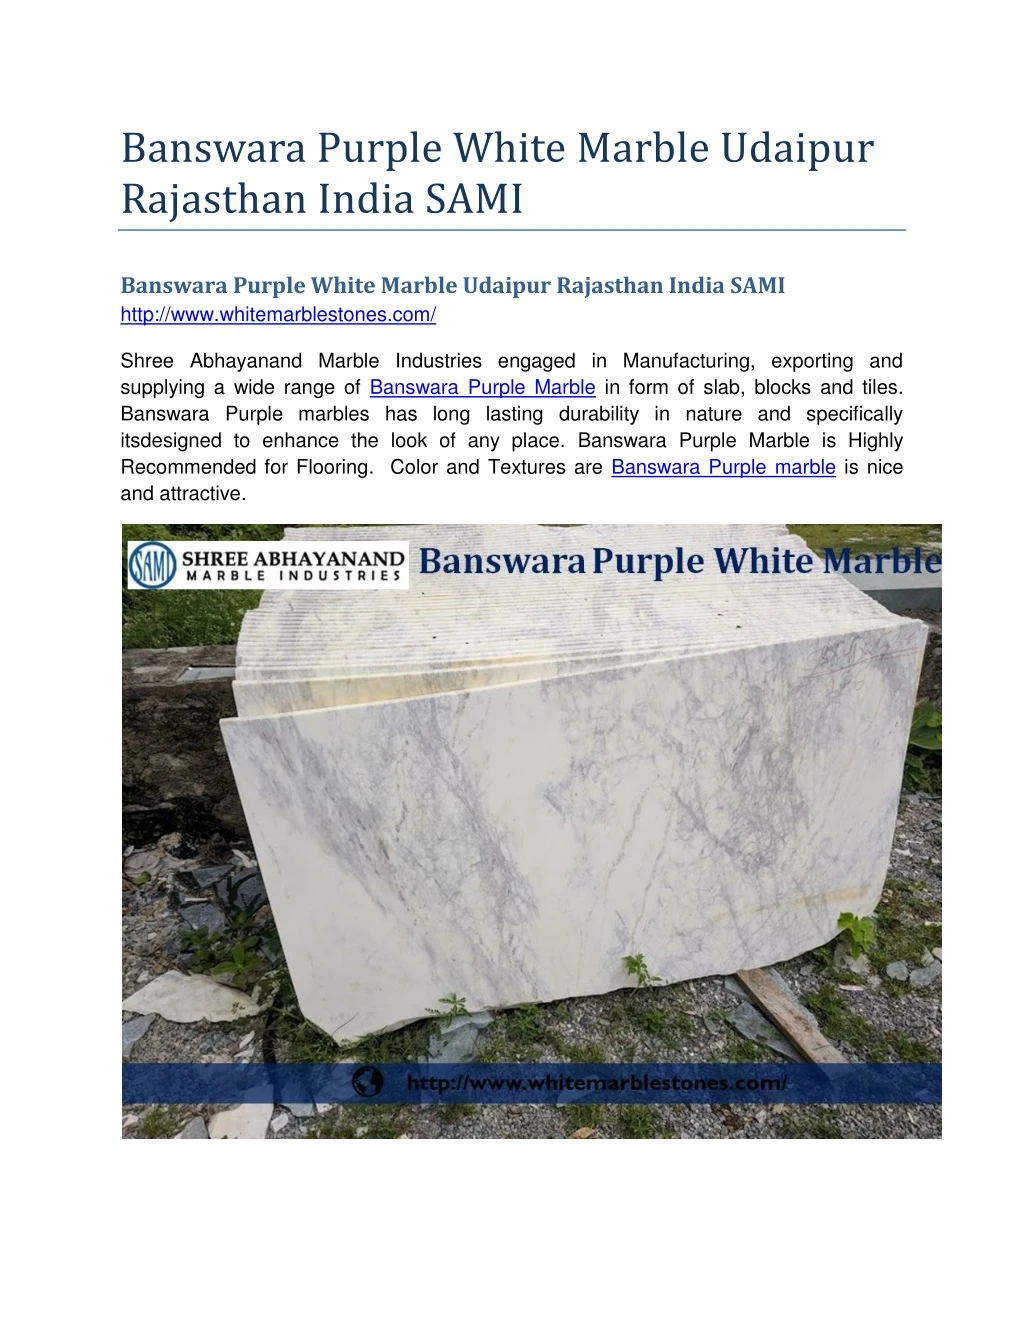 banswara purple white marble udaipur rajasthan